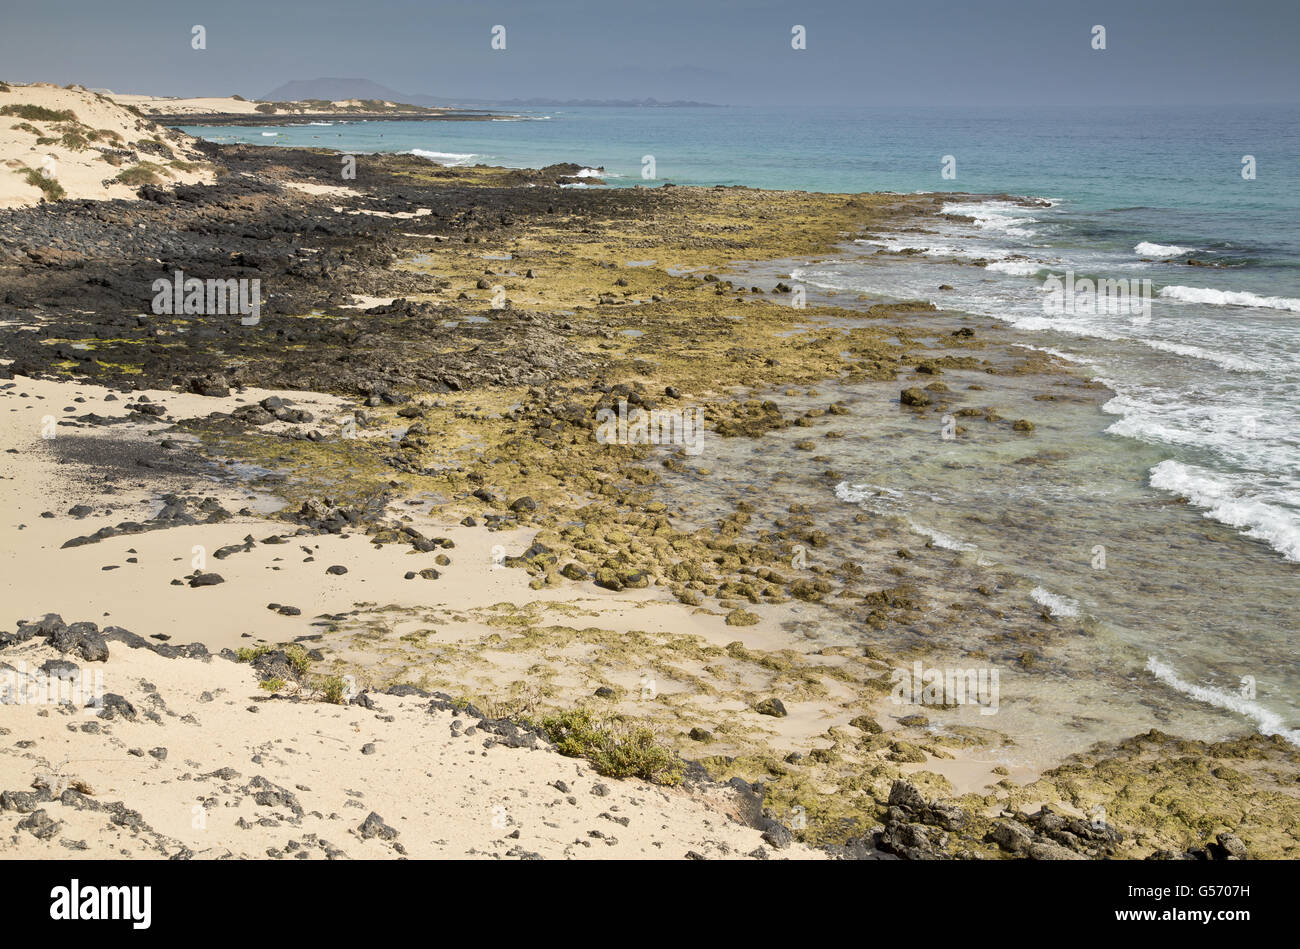 View of beach and coastline, Parque Natural de las Dunas de Corralejo, Fuerteventura, Canary Islands, March Stock Photo